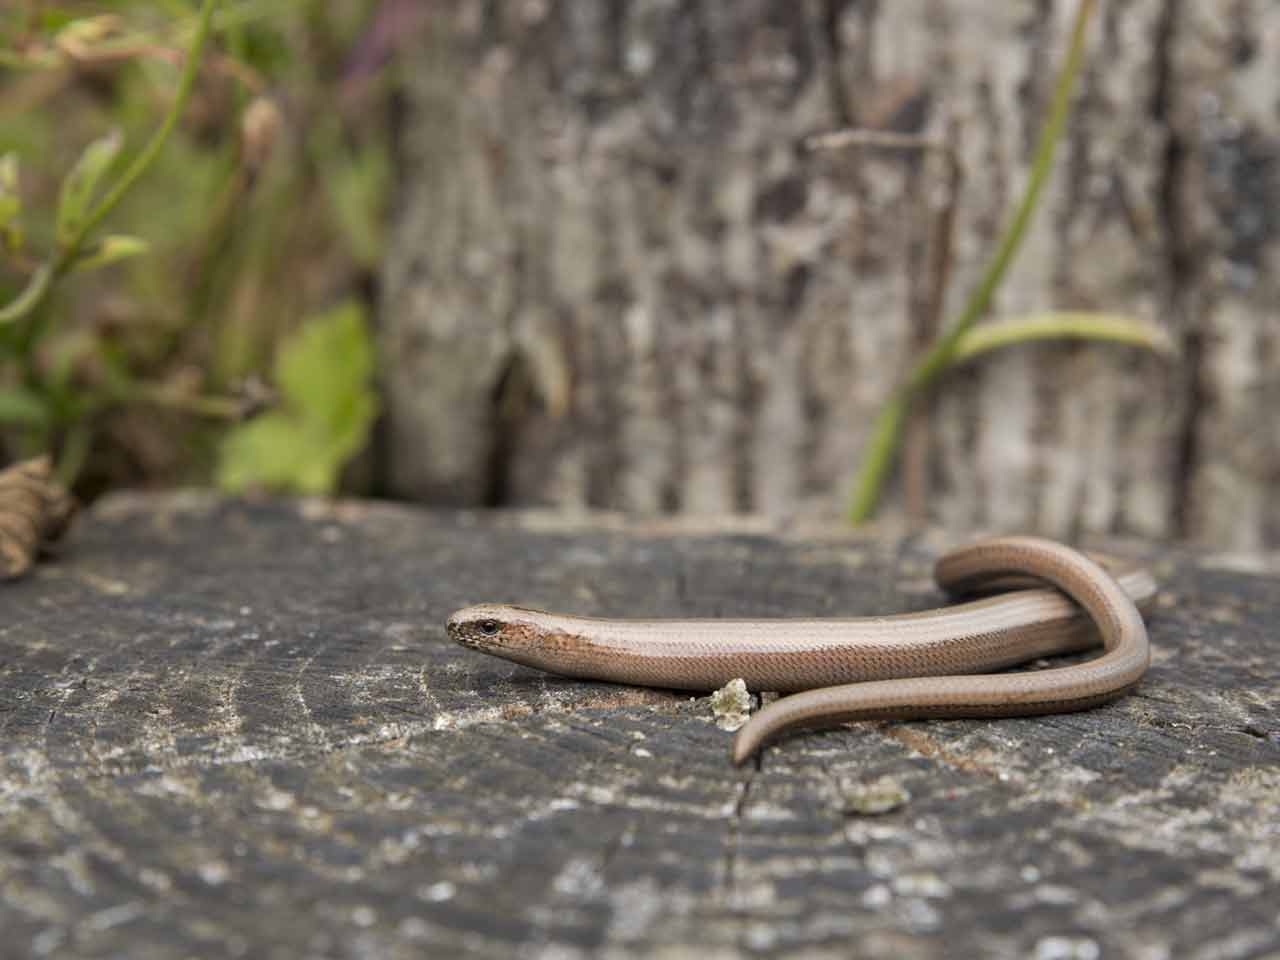 Slow worm in garden